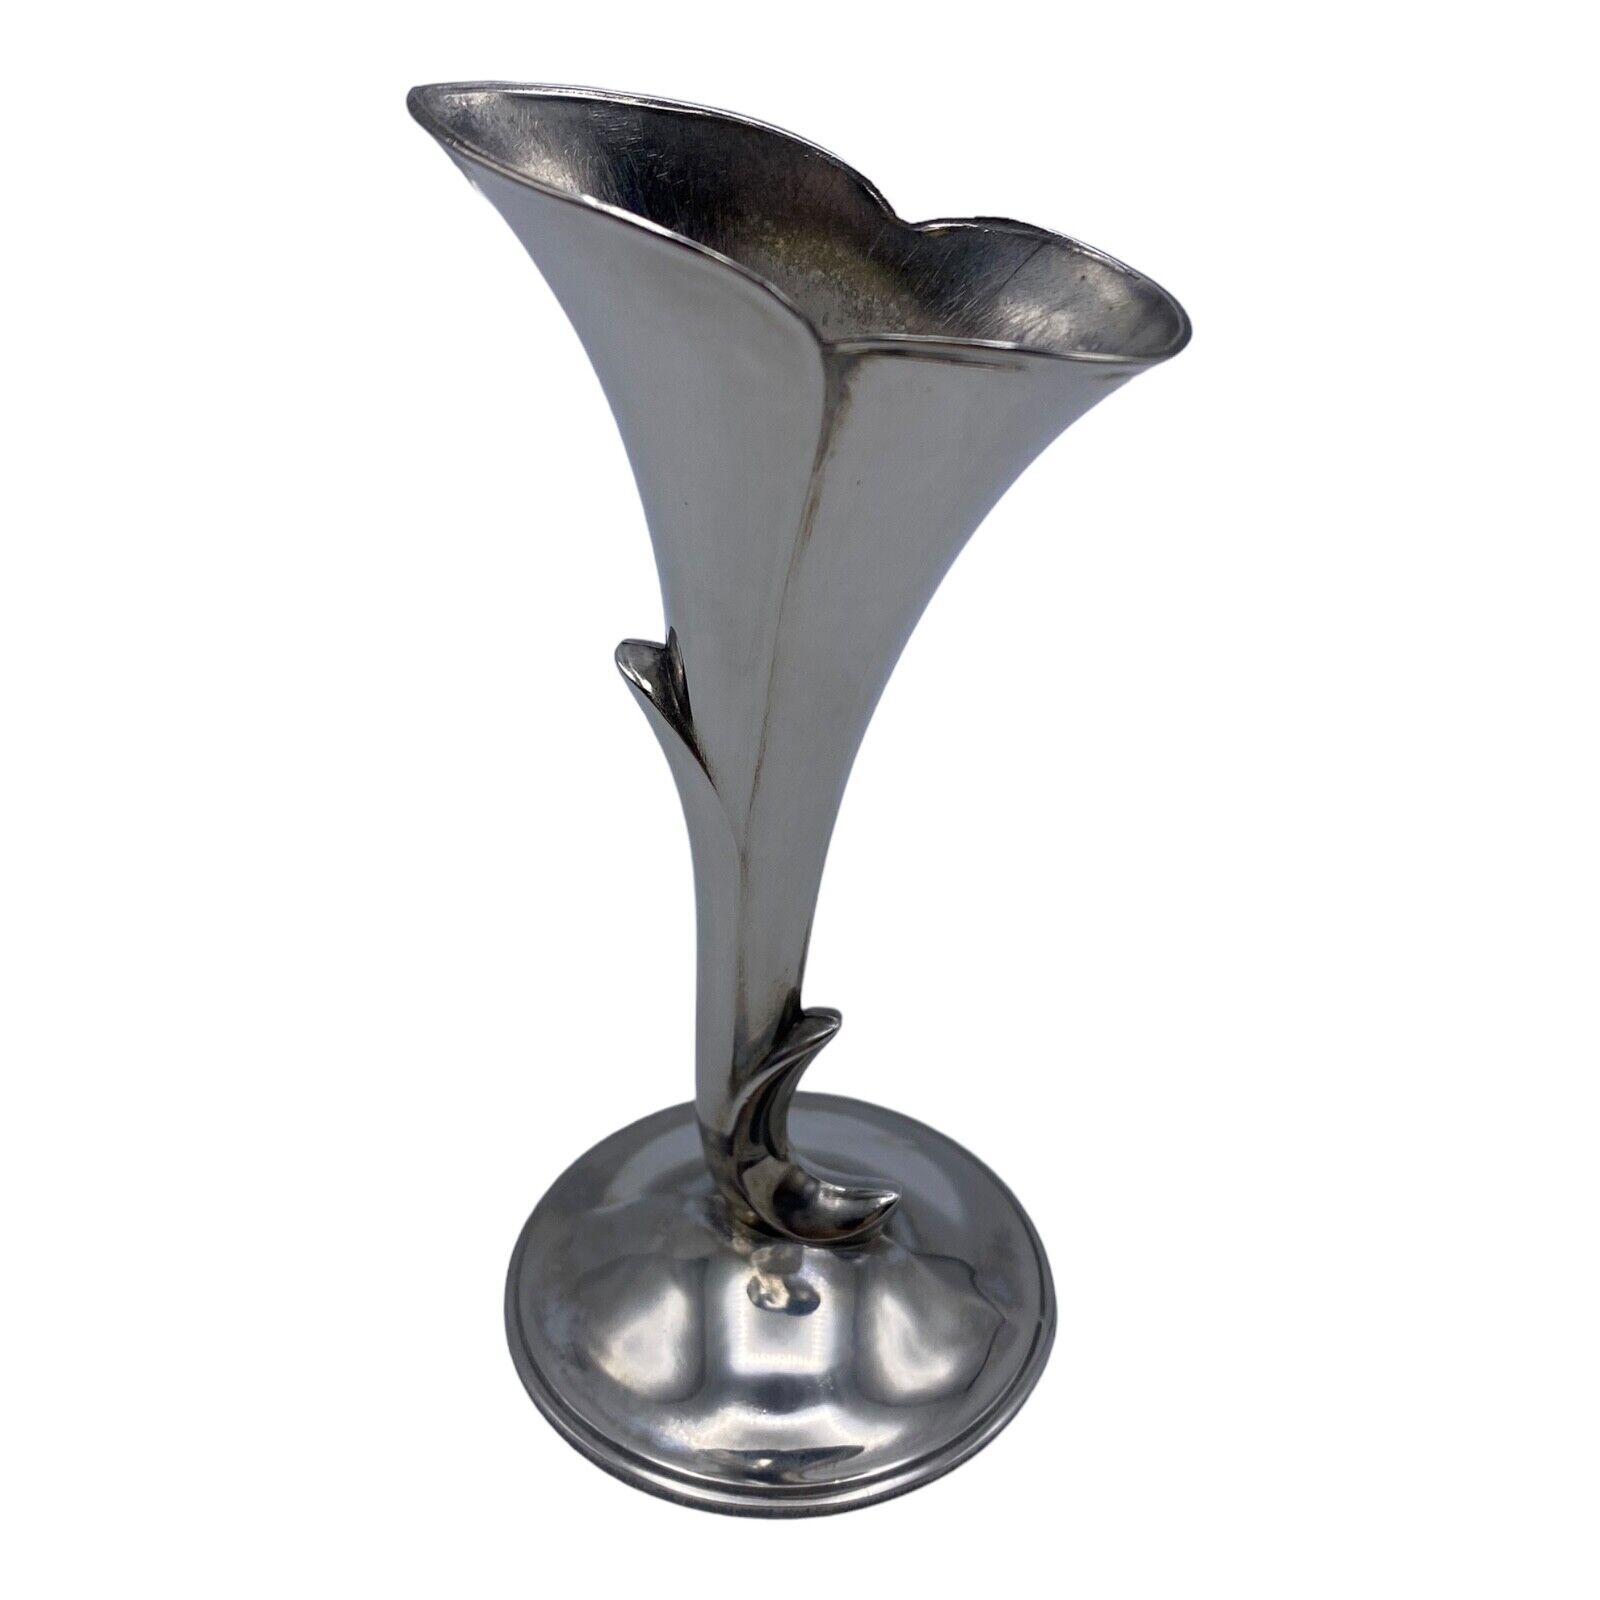 Vintage Godinger Silver Art Co Bud Vase 5” Silver Plate